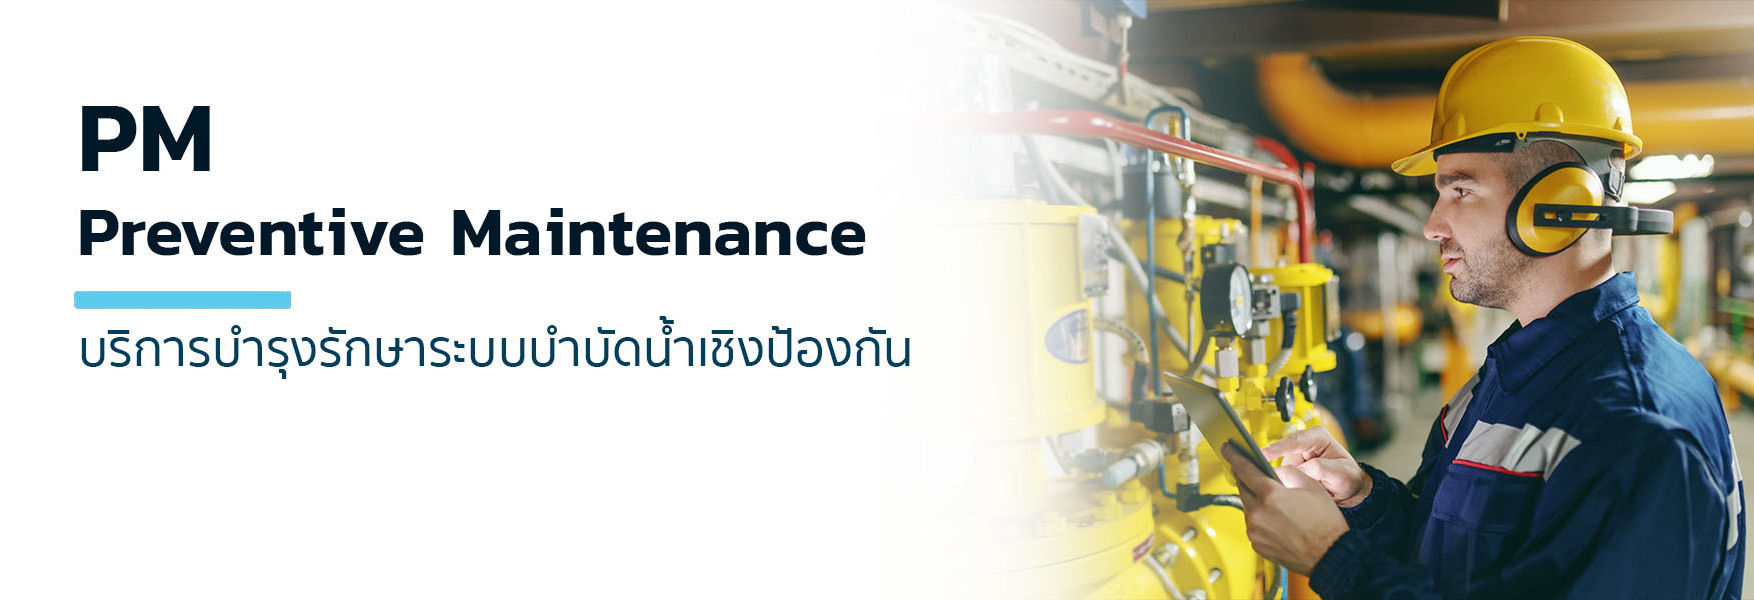 PM or Preventive maintenance